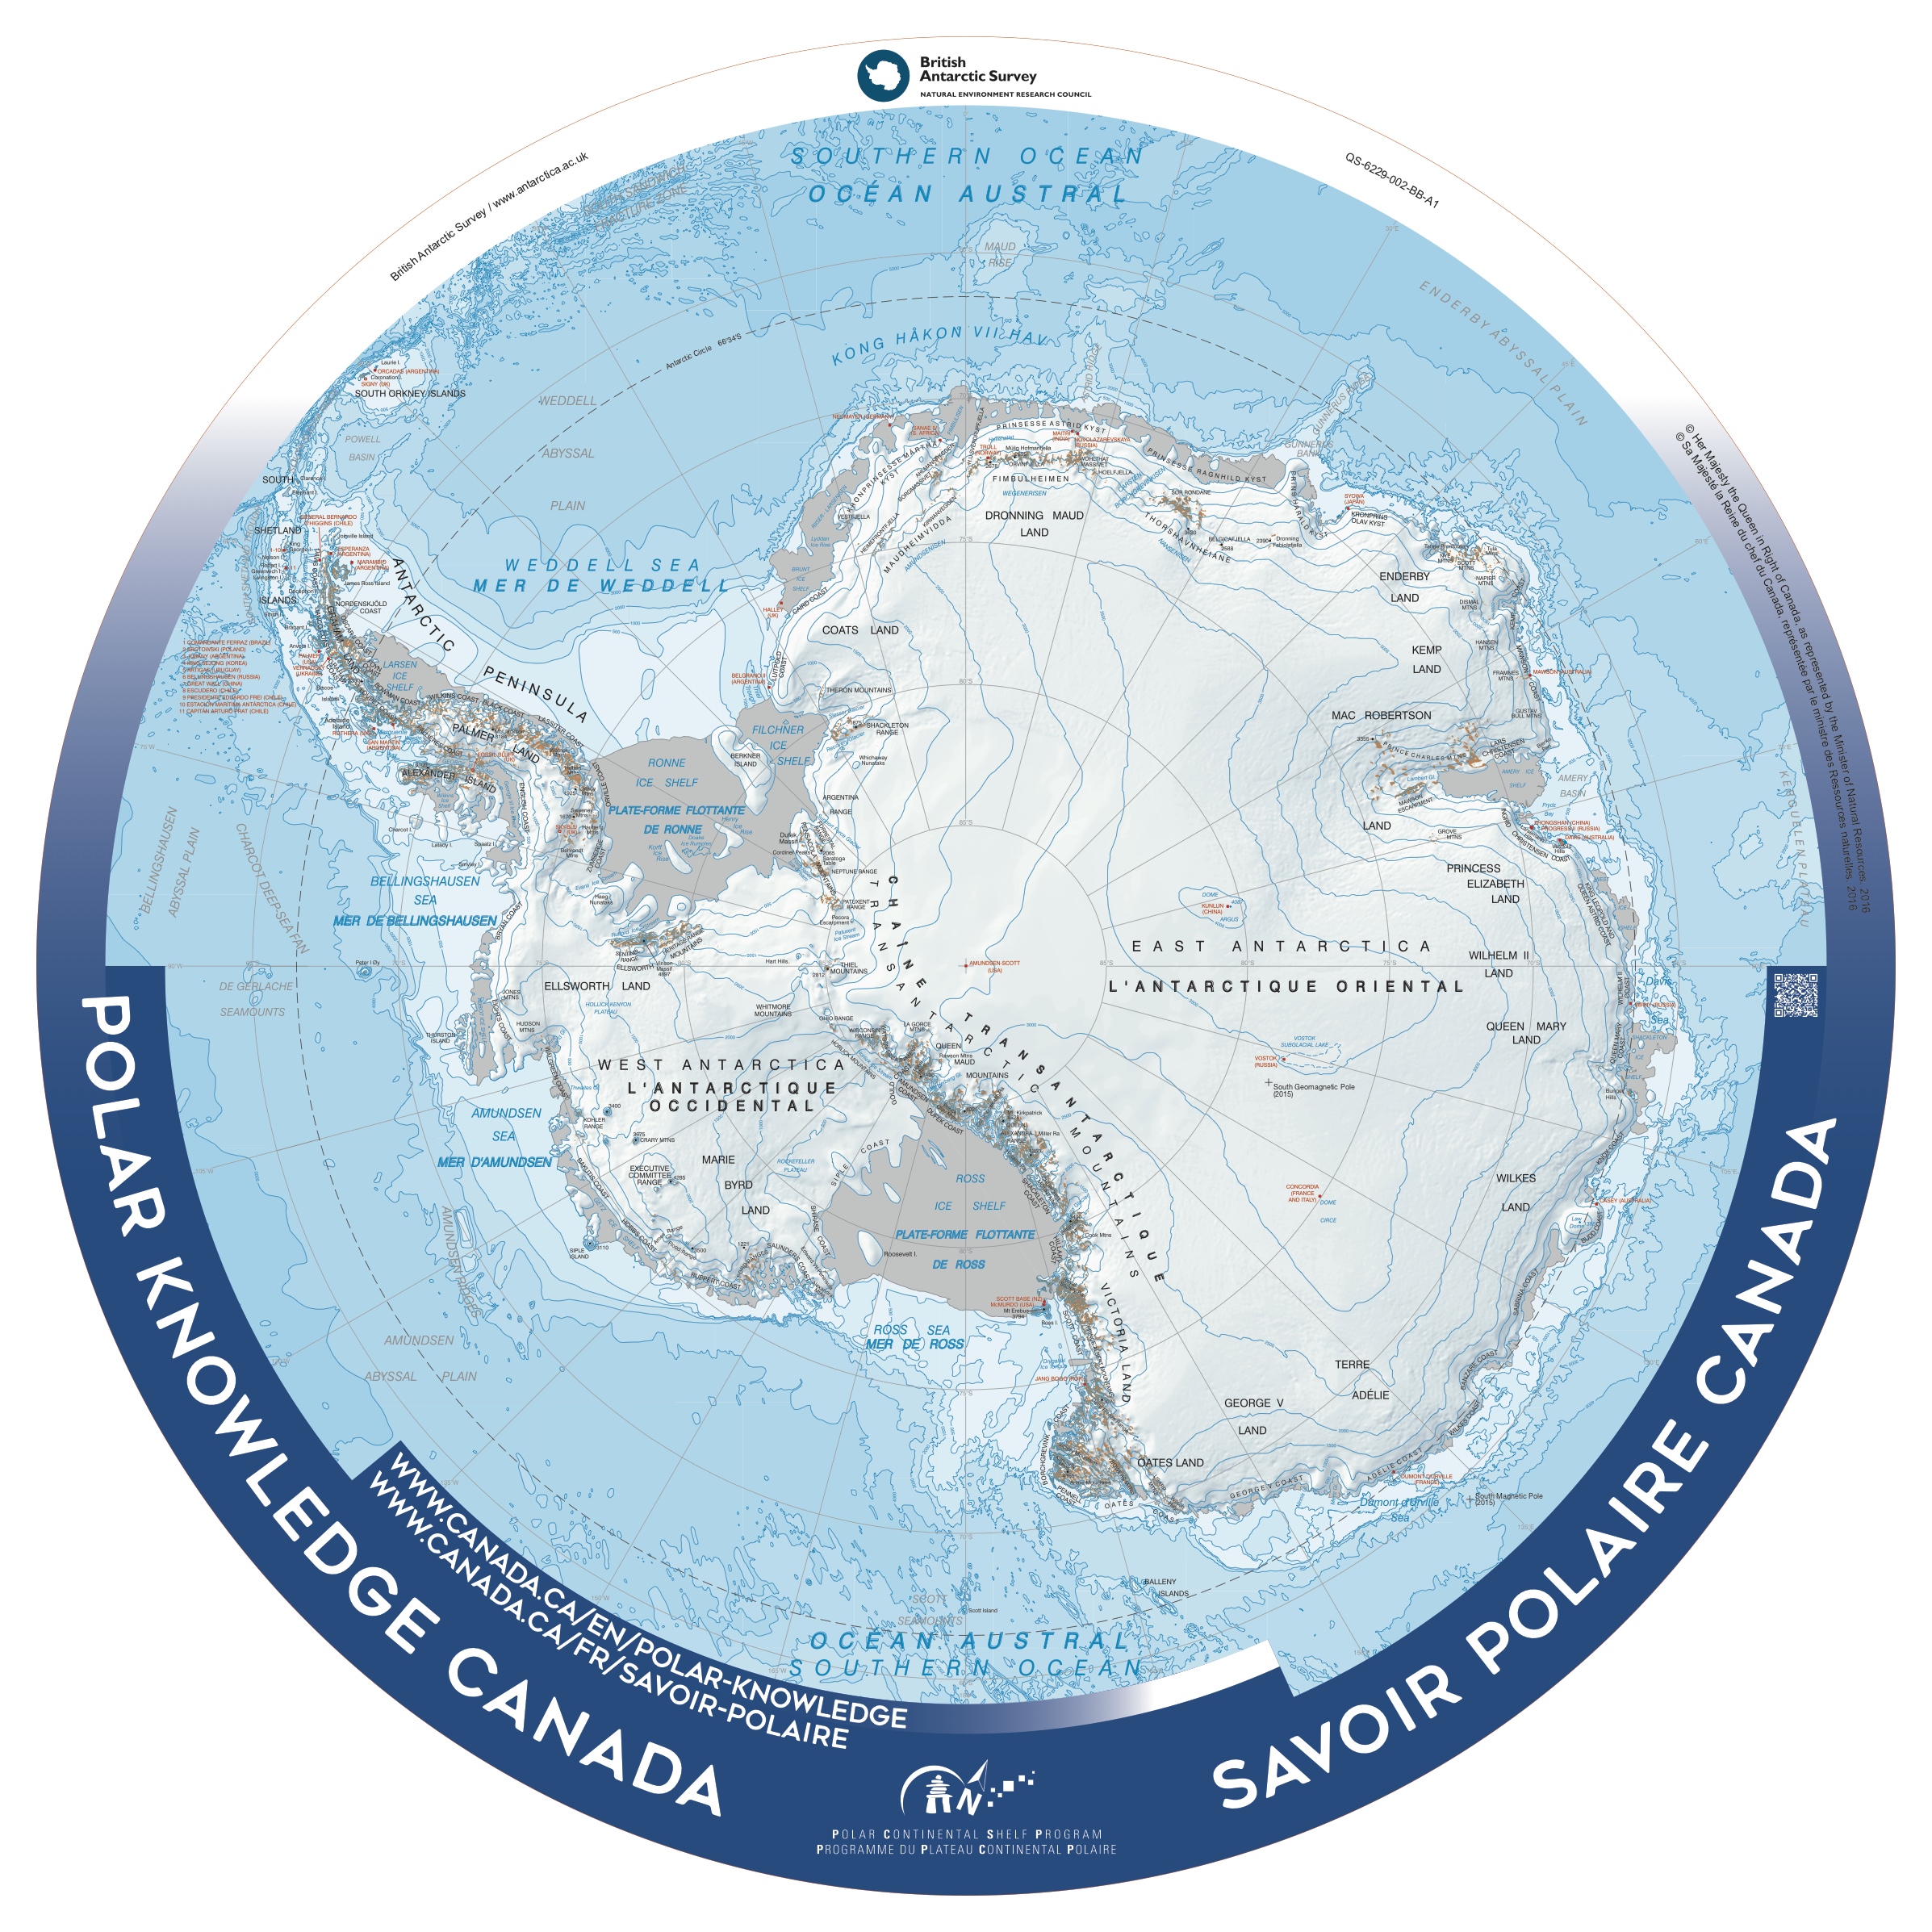 antarctica-topographic-map-populationdata